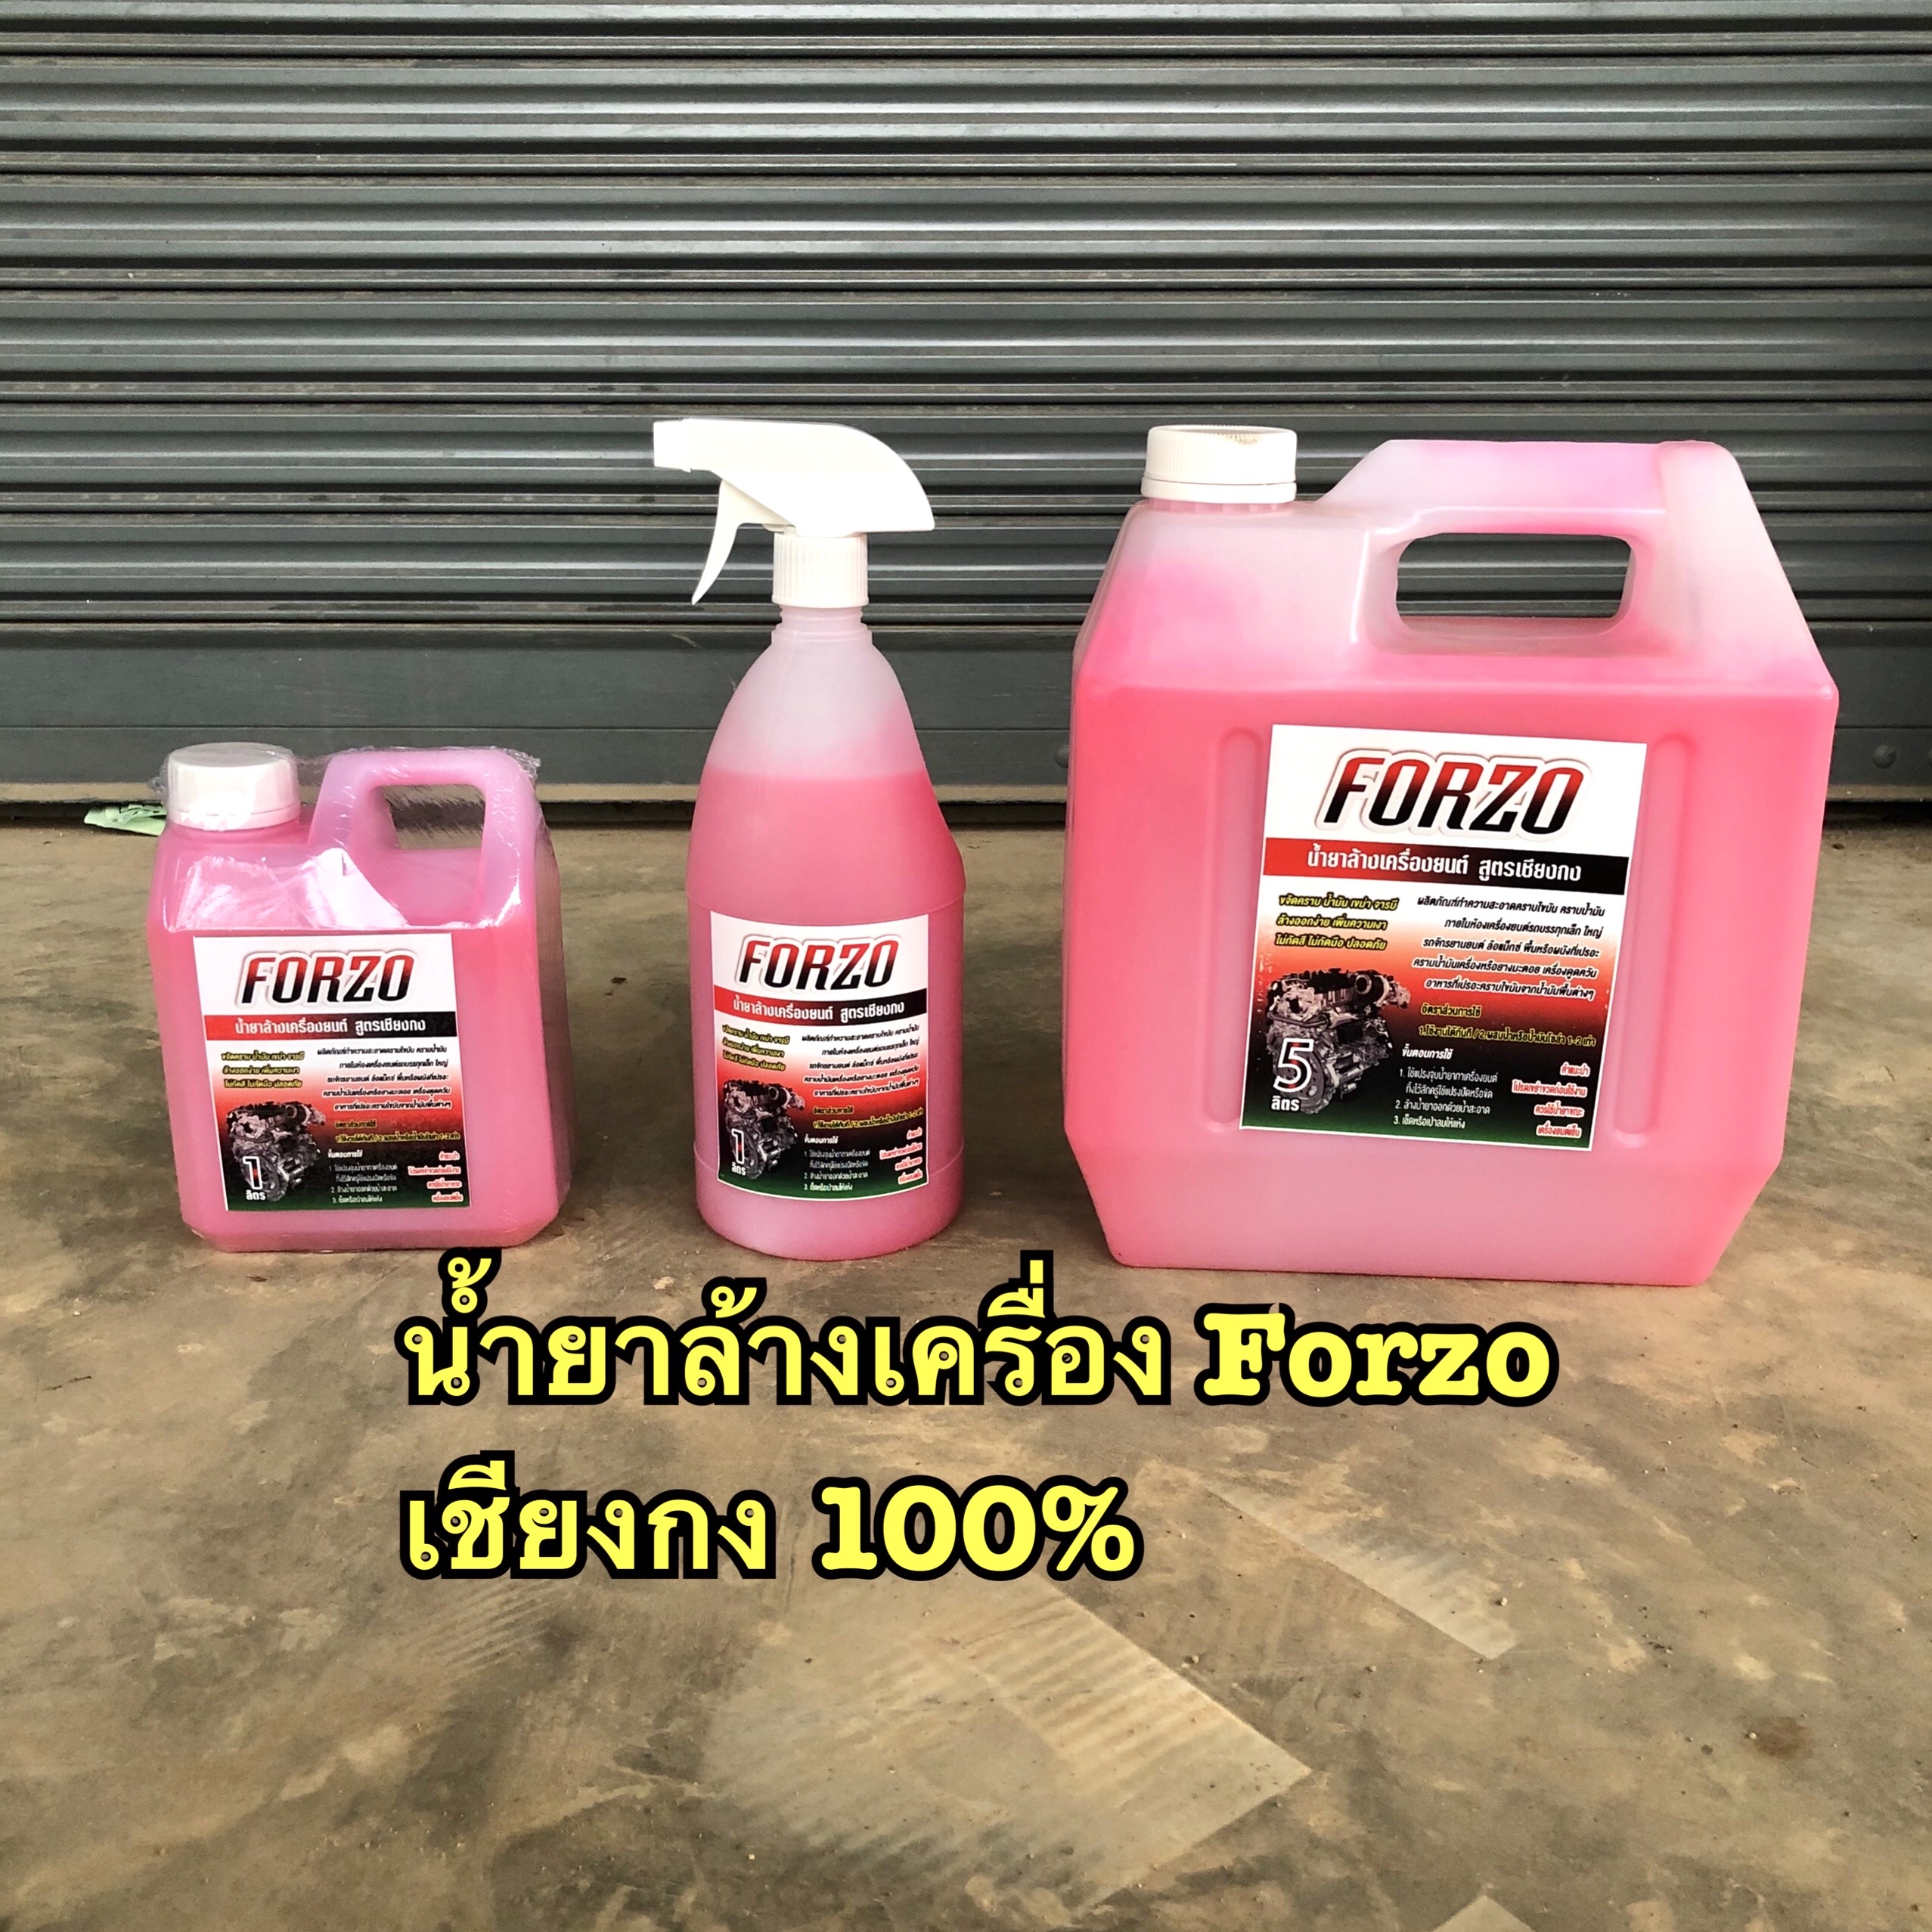 Forzo น้ำยาล้างเครื่อง 1 ลิตร หัวเชื้อเข้มข้น แท้100% จากเชียงกง ล้างออกทุกคราบ น้ำยาล้างห้องเครื่อง น้ำยาล้างจารบี